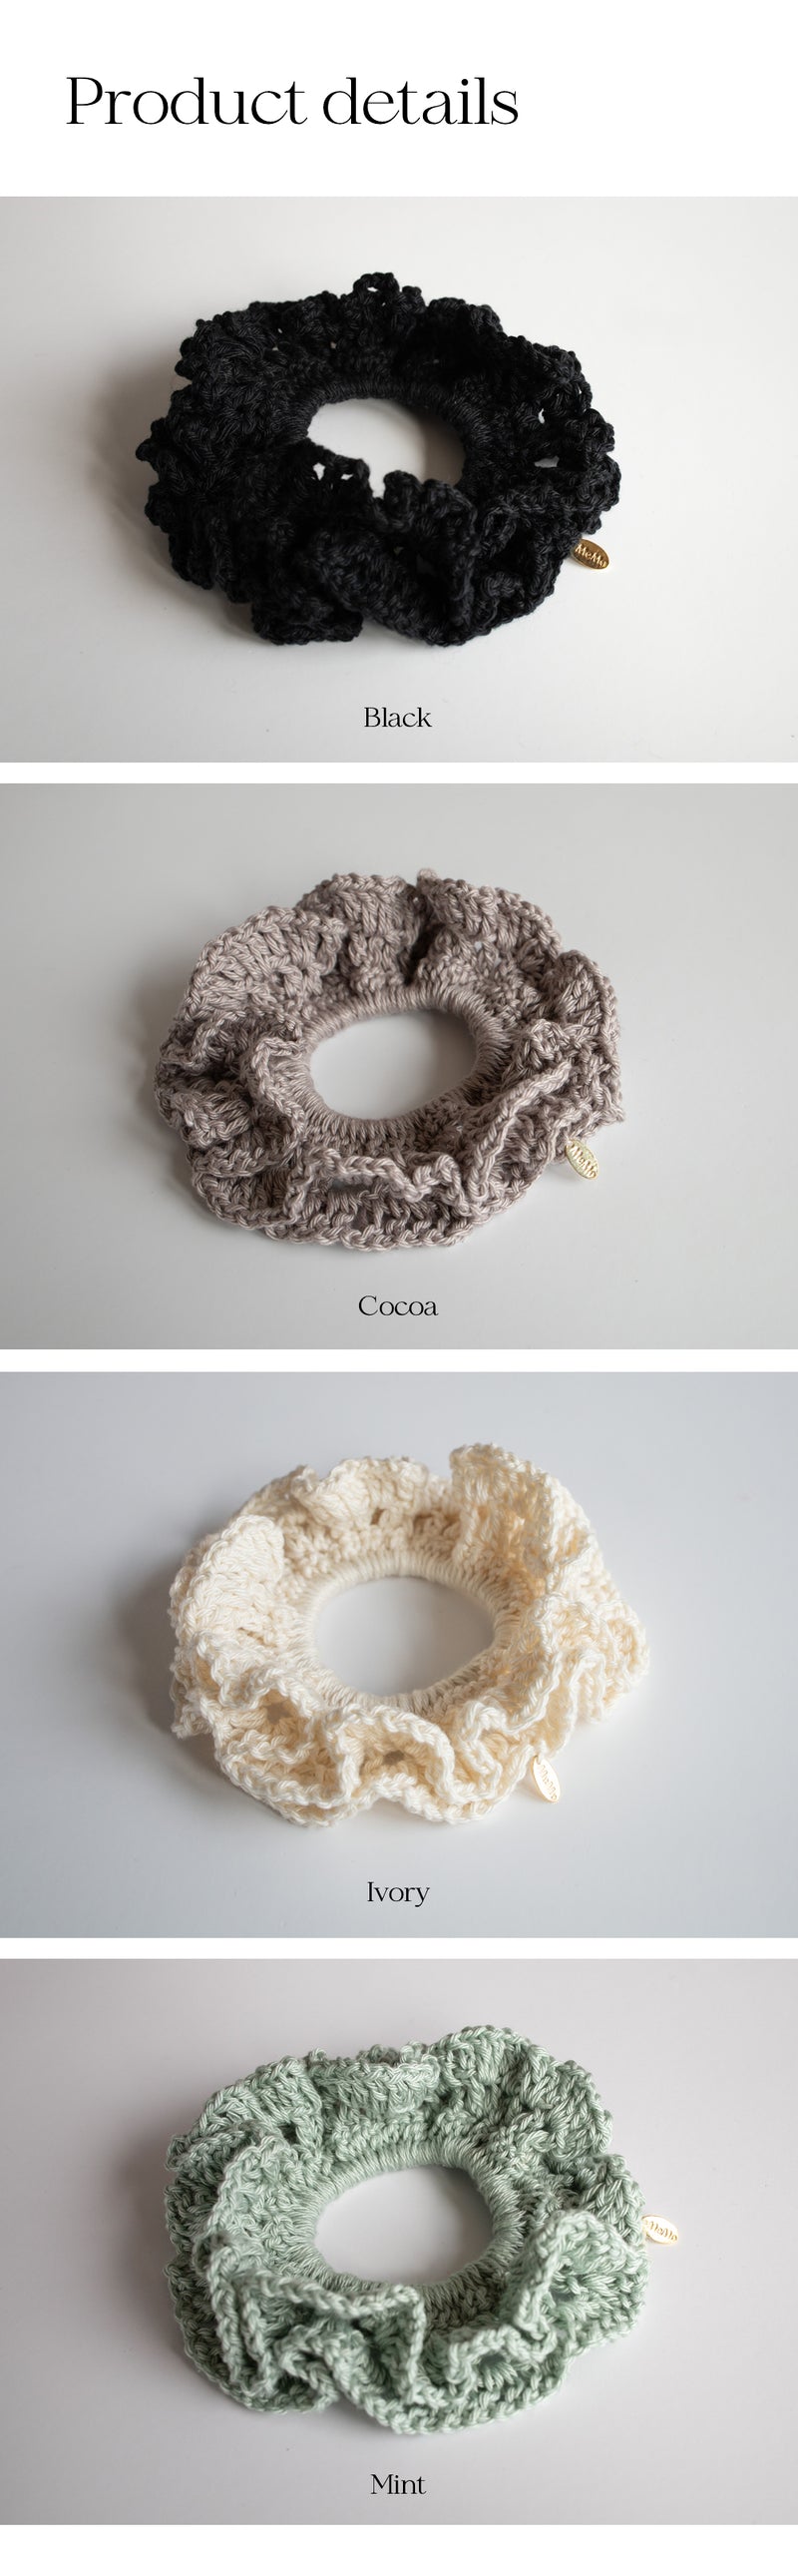 ハンドメイドクロシェニットシュシュ/Handmade crochet knitted scrunch (4colors)